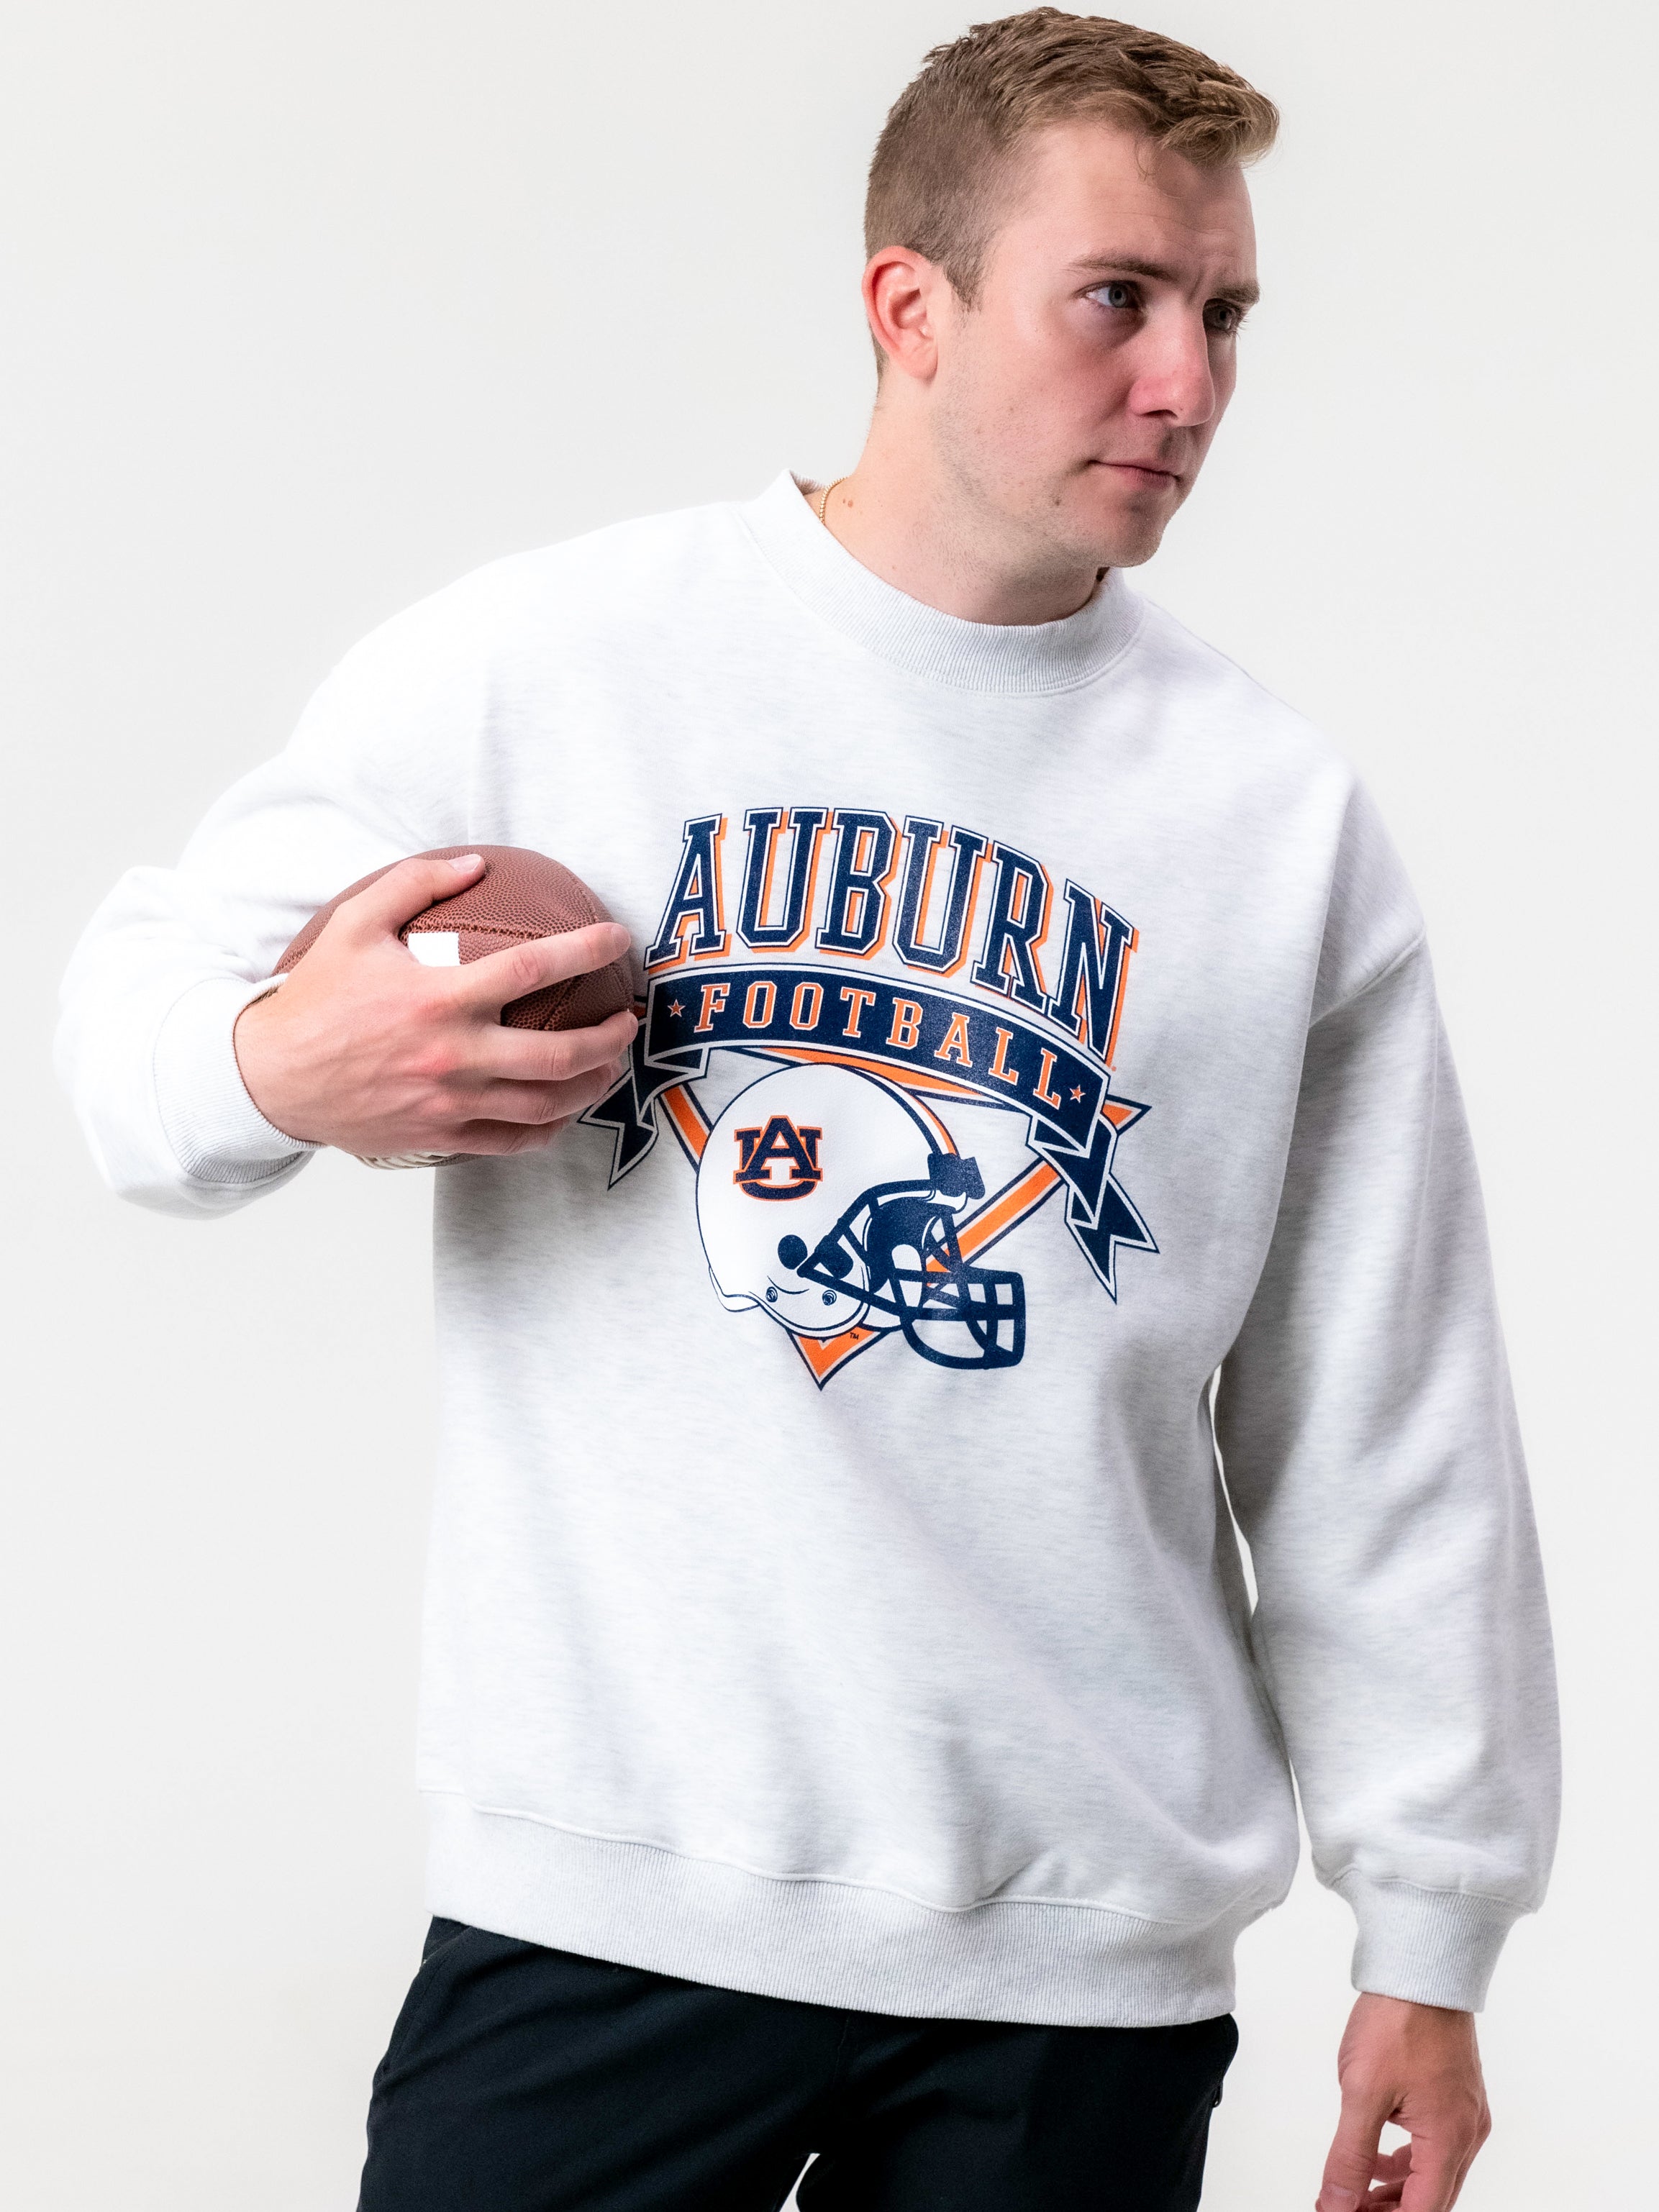 Syracuse University - Vintage Crewneck Sweatshirt - Ash Grey